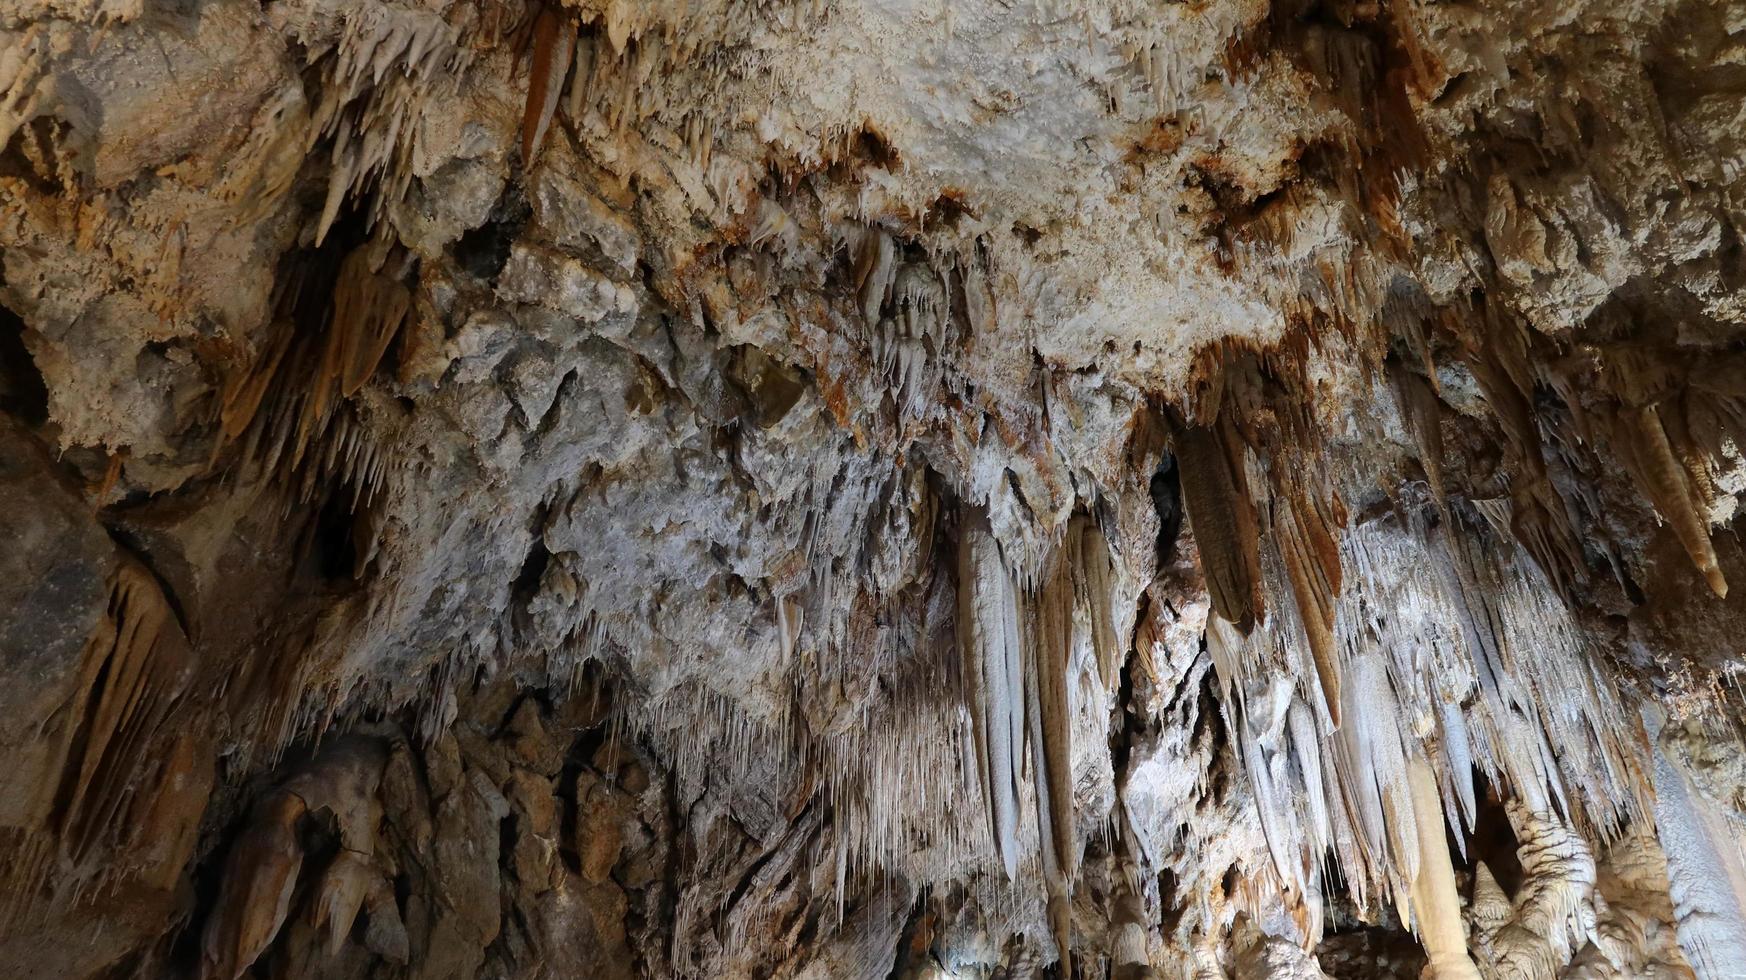 le grotte di borgio verezzi con le sue stalattiti e le sue stalagmiti grotte rupestri scavate dall'acqua nel corso dei millenni. nella Liguria occidentale foto